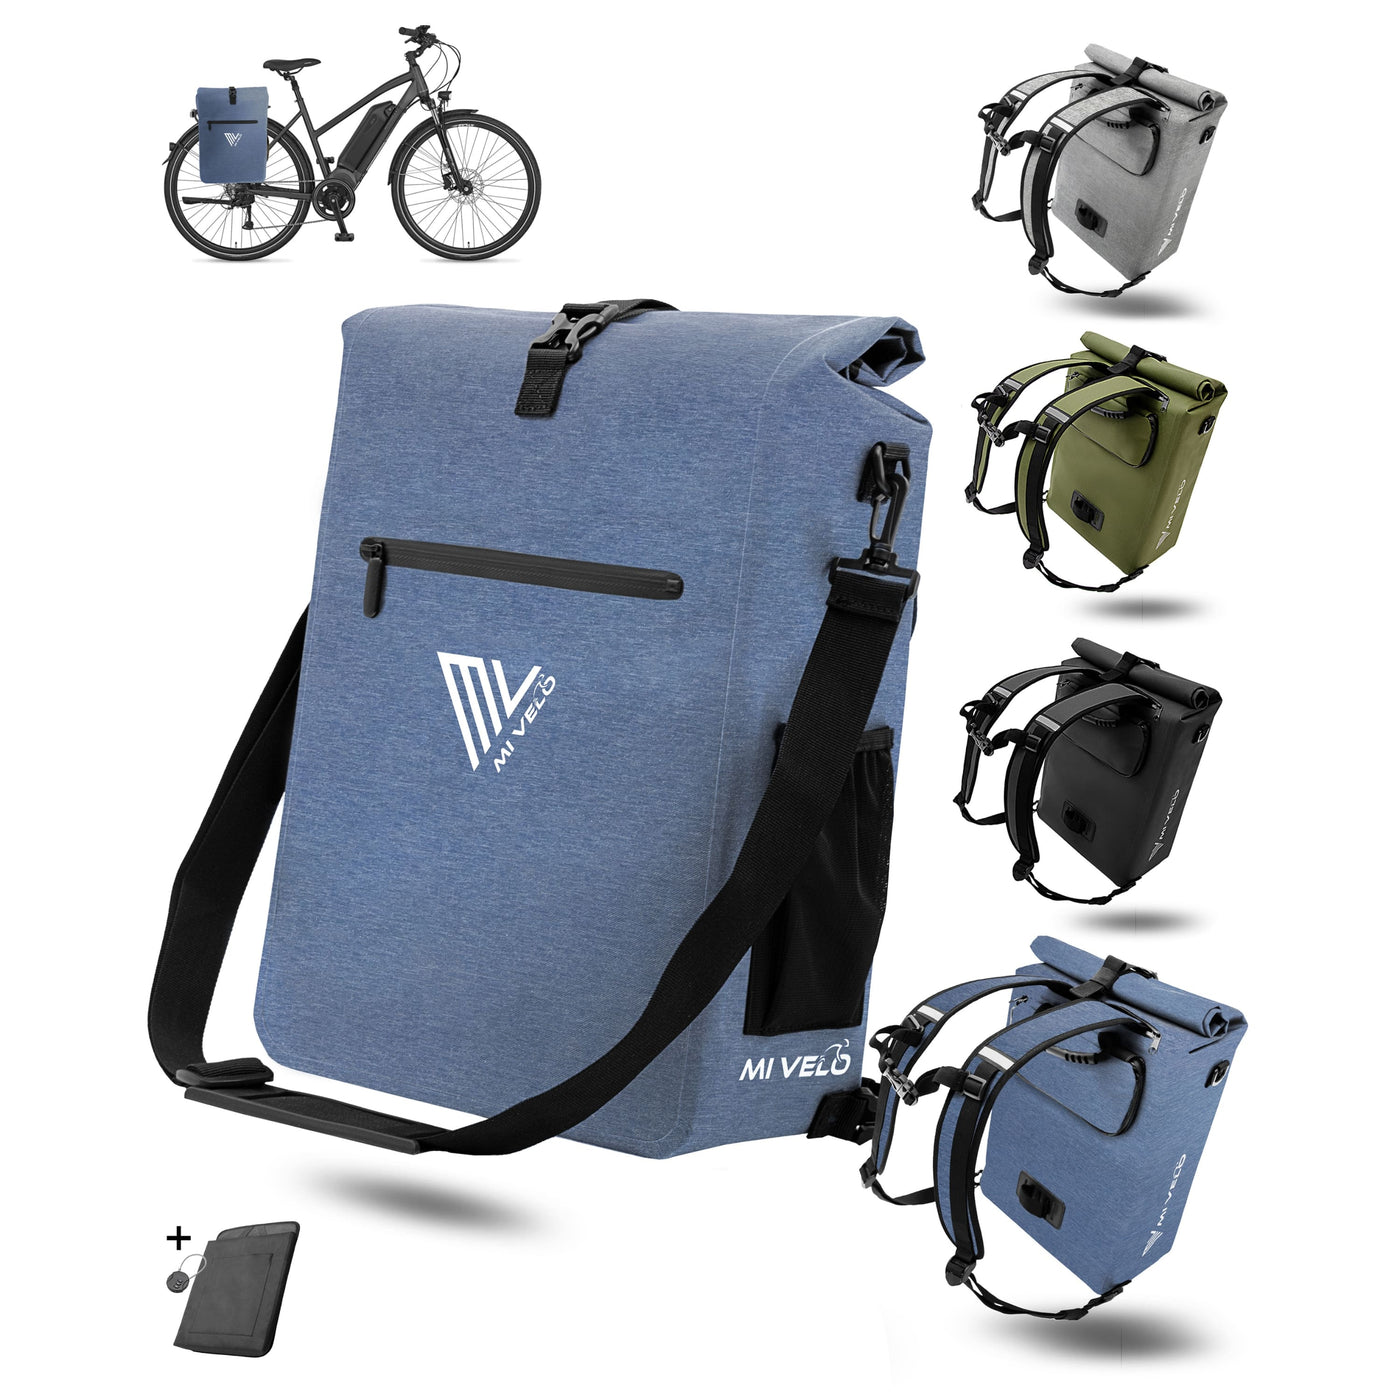 MiVelo 3i1n Fahrradtasche Rucksack für Gepäckträger Rucksack Fahrradtasche Umhängetasche 25L